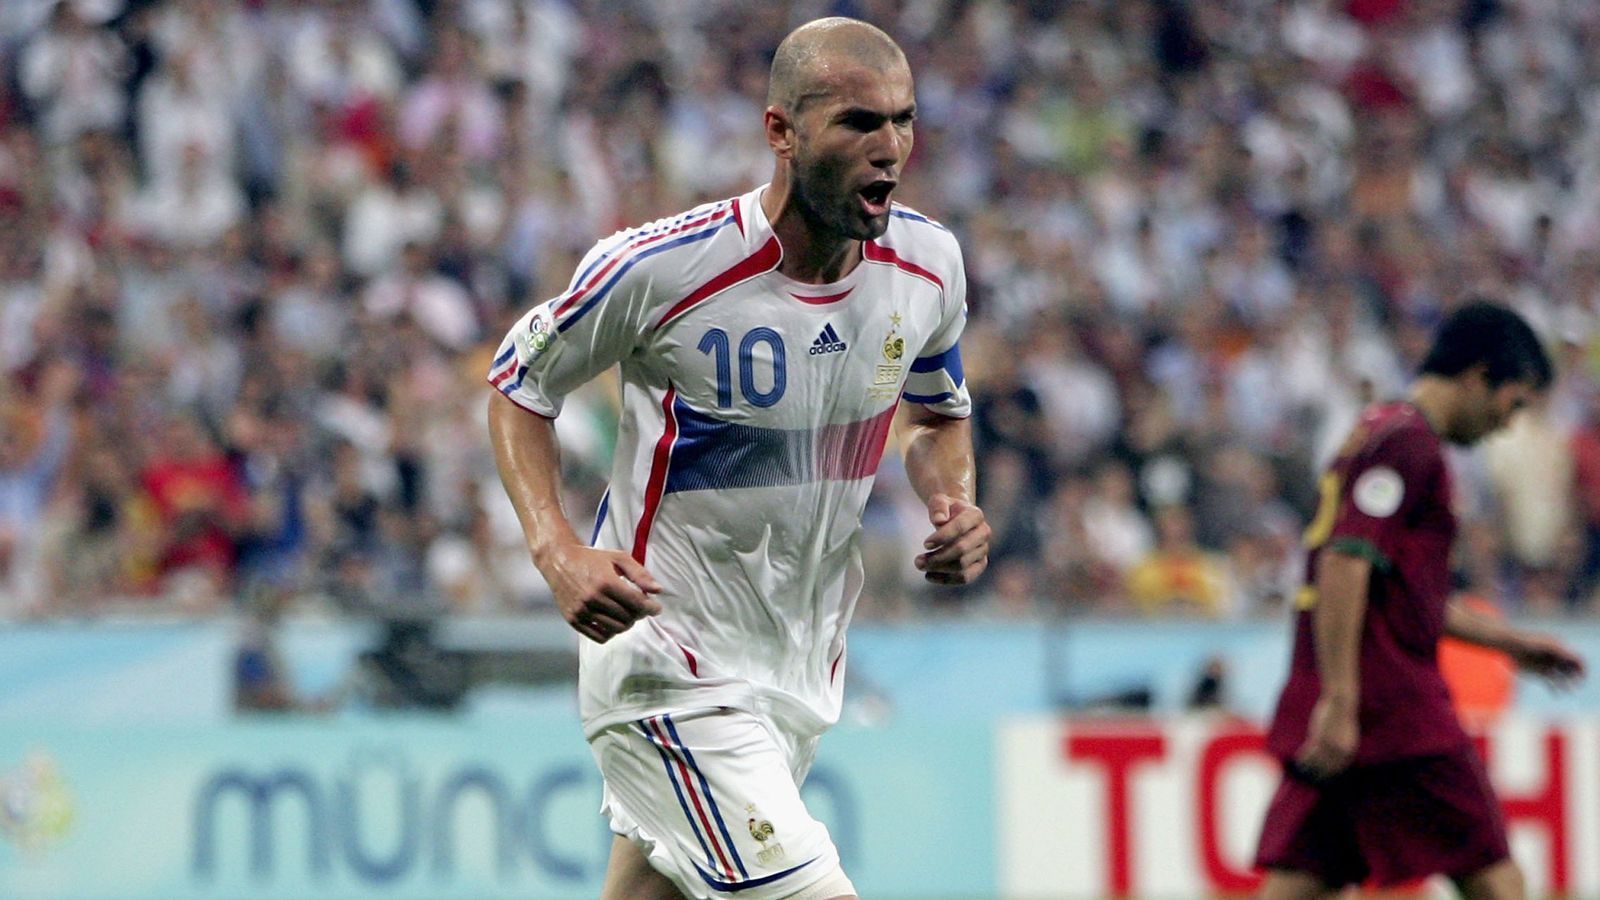 
                <strong>Zinedine Zidane</strong><br>
                Zusammen mit Ronaldo spielte er bei den "Galacticos" von Real Madrid, in den Nationalmannschaften waren sie allerdings Konkurrenten. Mit Frankreich wurde Zidane Welt- und Europameister. Unvergessen außerdem sein Volley im Champions-League-Finale 2002 gegen Bayer Leverkusen. 
              